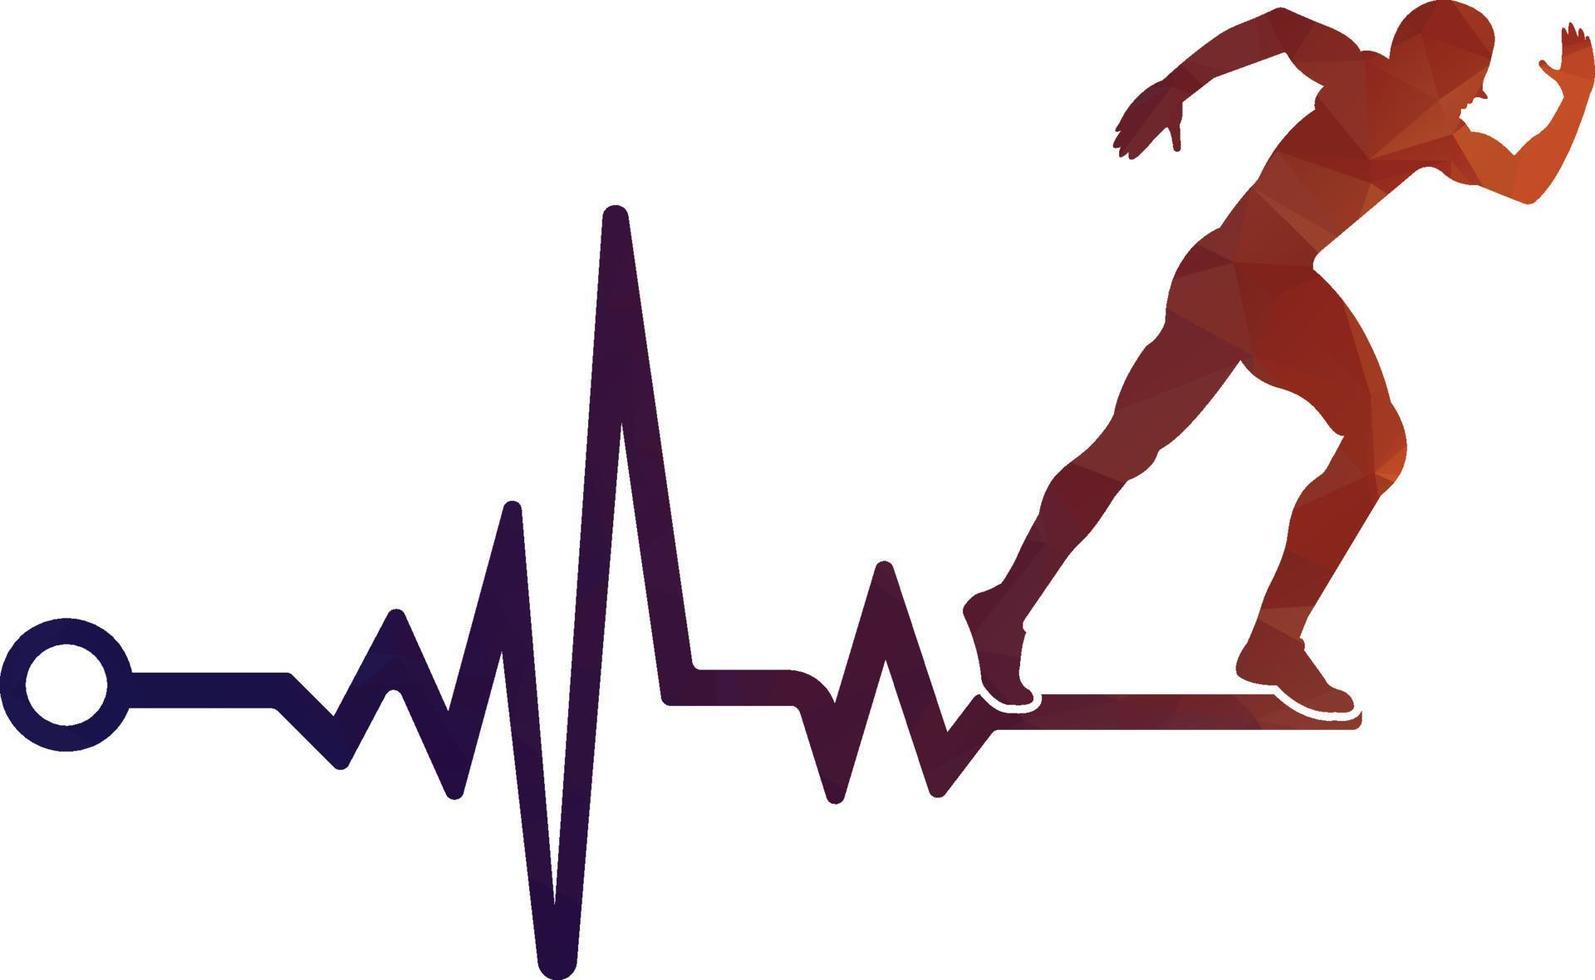 vector de icono de diseño de logotipo de maratón de pulso. diseño del logotipo de cuidado de la salud corporal. hombre corriendo con el icono del latido del corazón del ecg de línea.